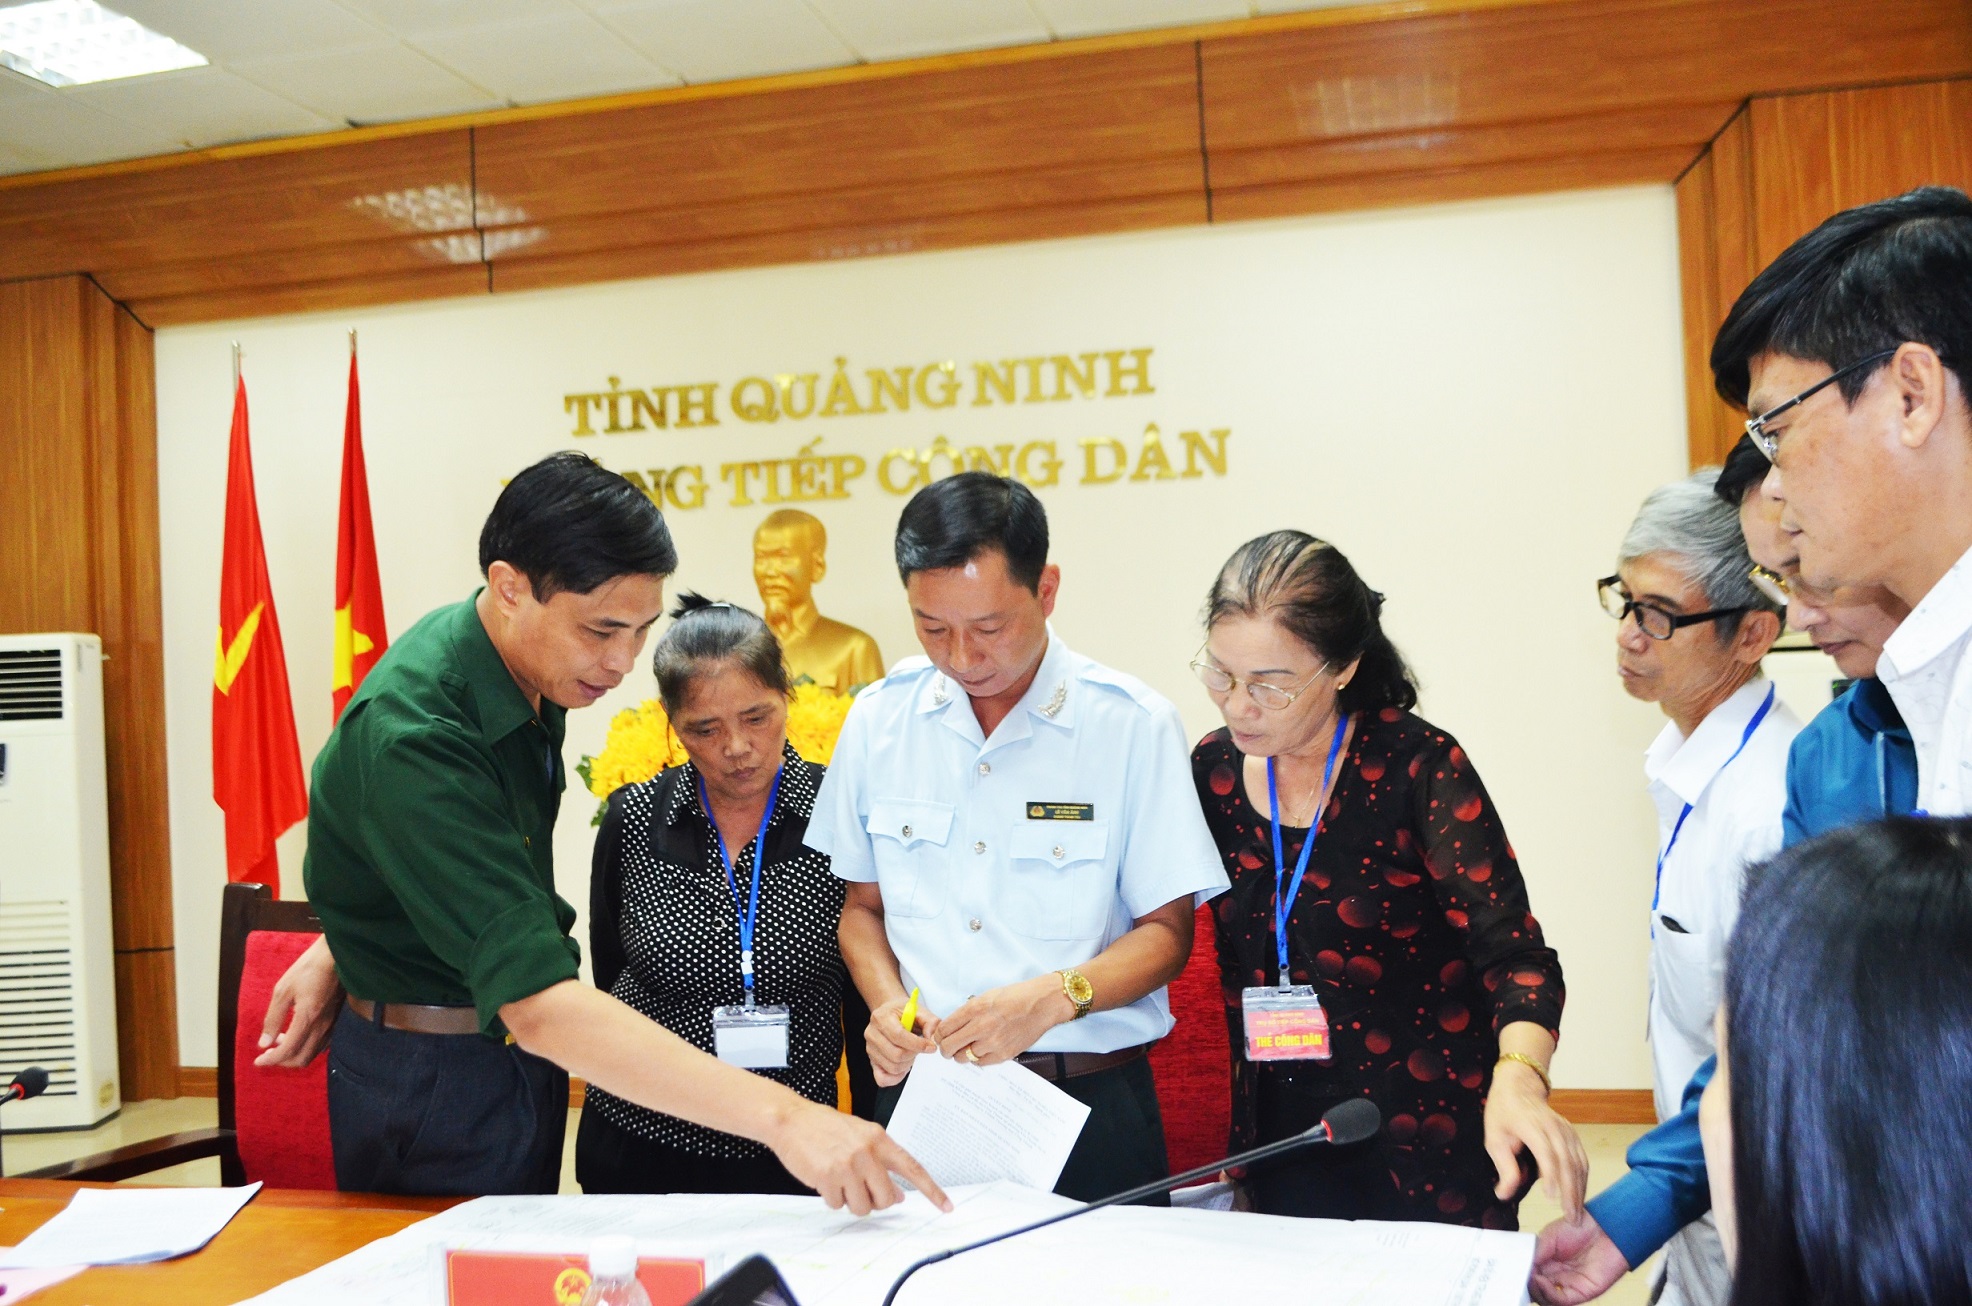 Đồng chí Vũ Văn Diện, Phó Chủ tịch UBND tỉnh trao đổi với công dân về nội dung kiến nghị